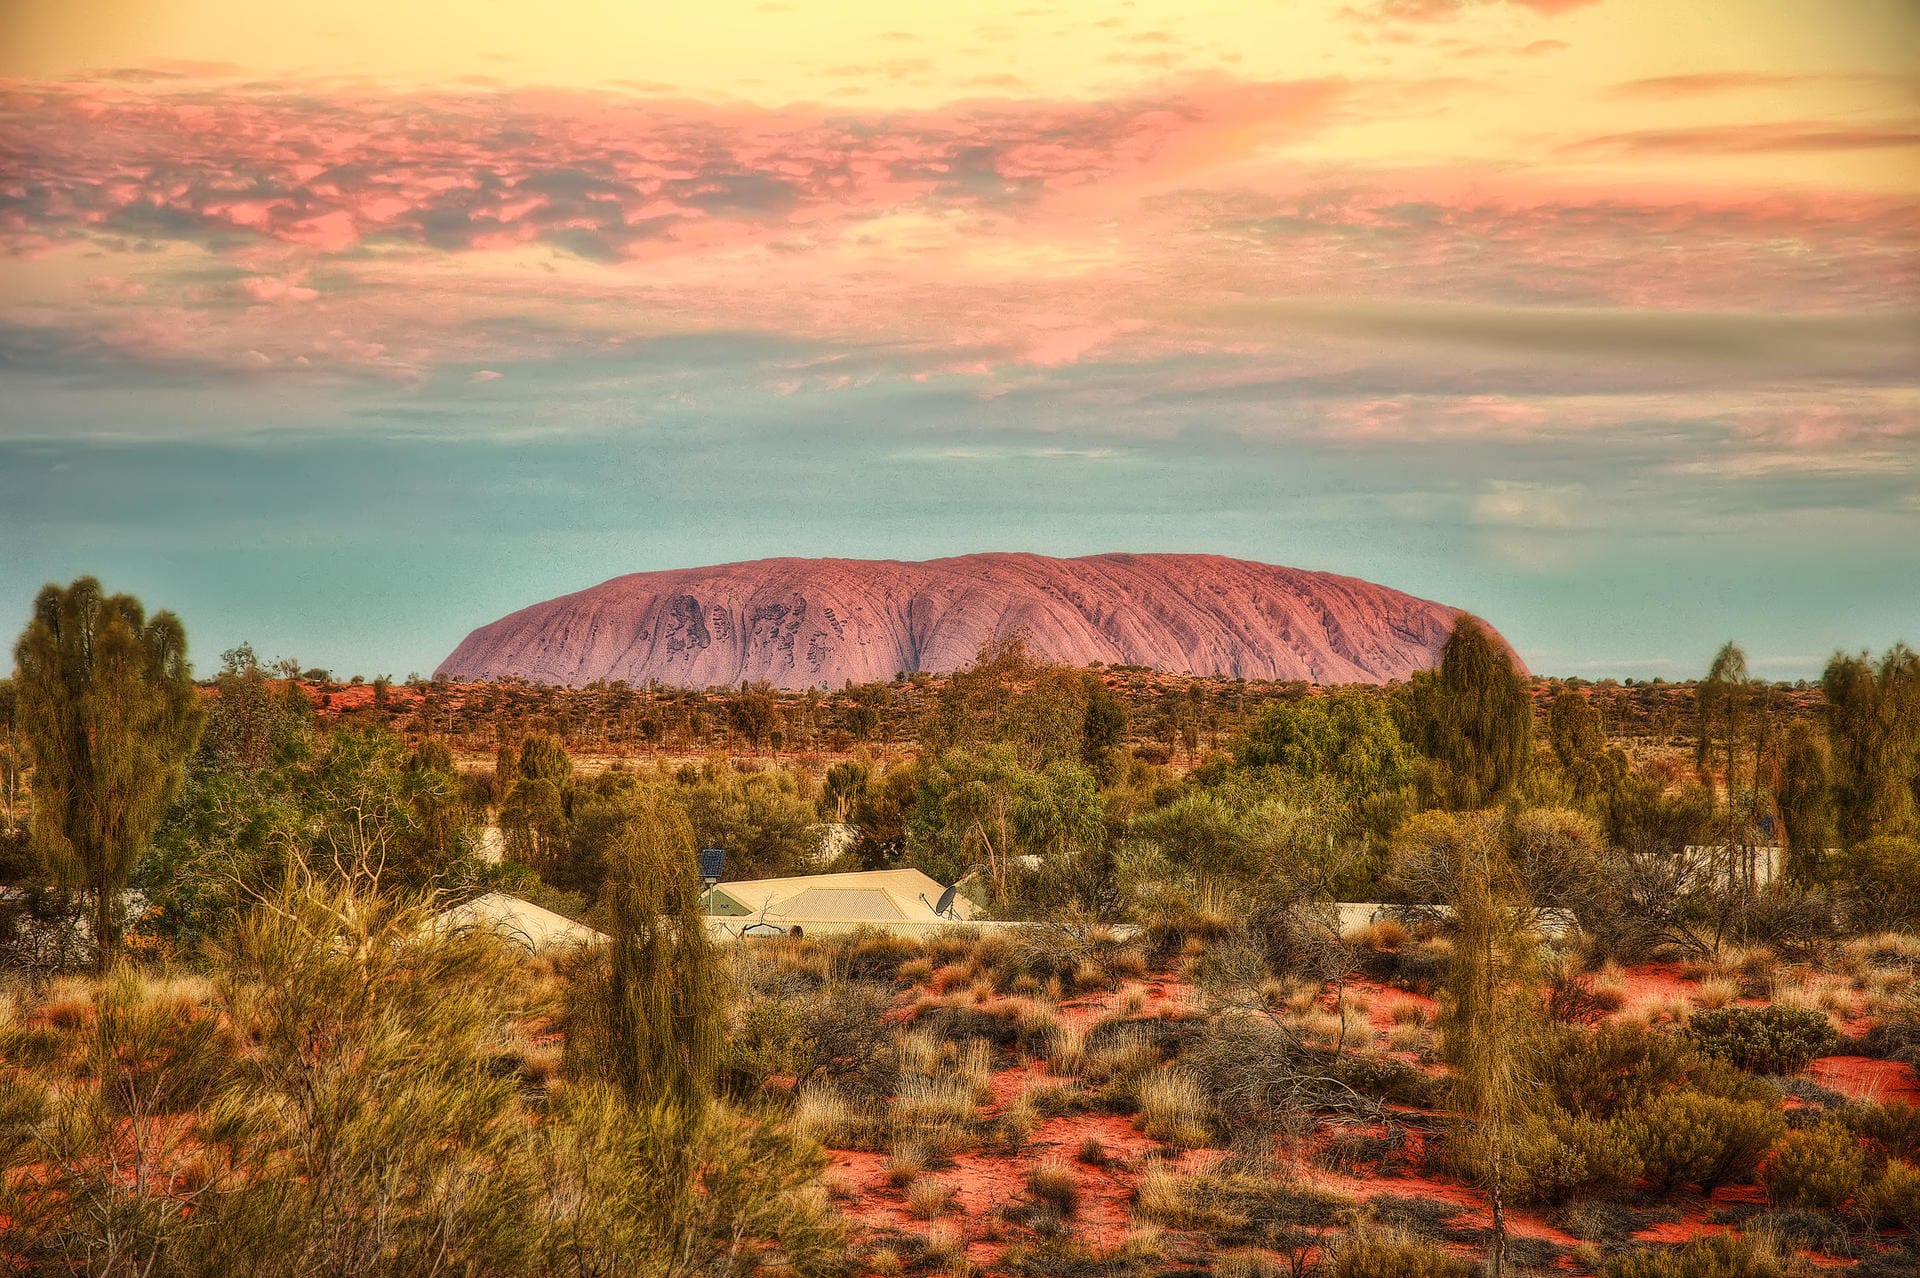 Uluru in Australien: Trotz eines starken Euros ist ein Urlaub in Australien immer noch teuer. Ein Abendessen in einem mittelklassigen Restaurant kostet rund 50 Euro.